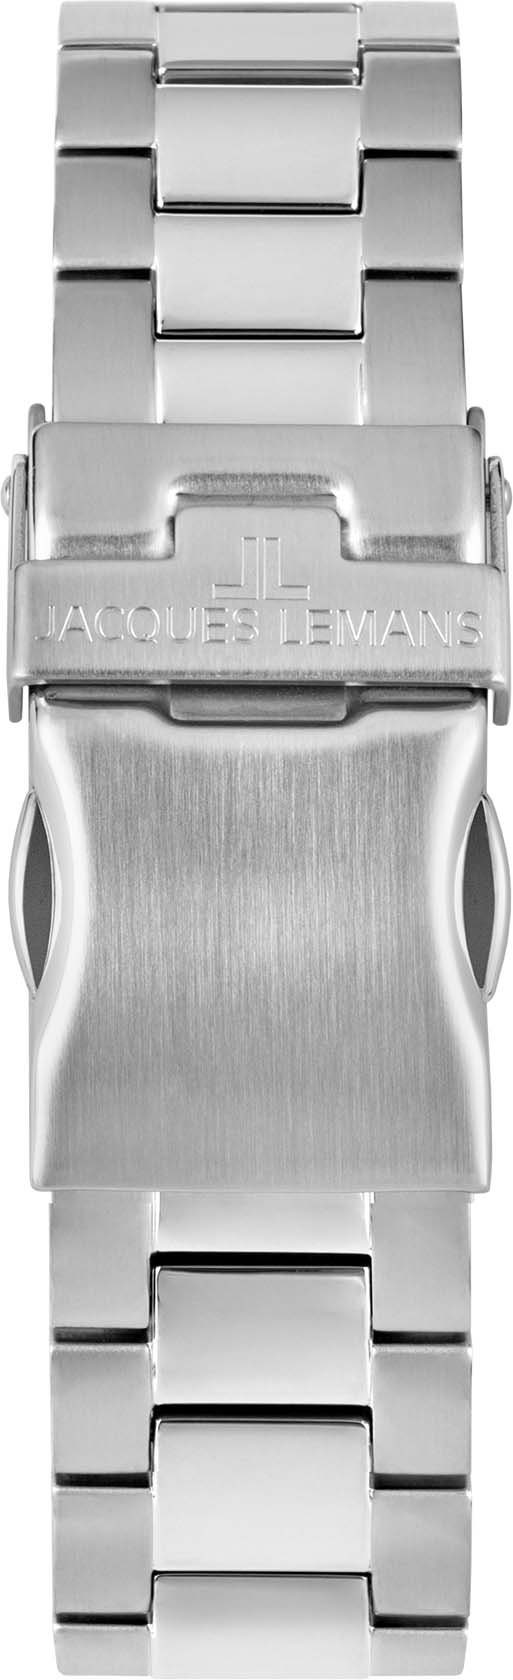 Jacques Lemans schwarz 42-11E Multifunktionsuhr